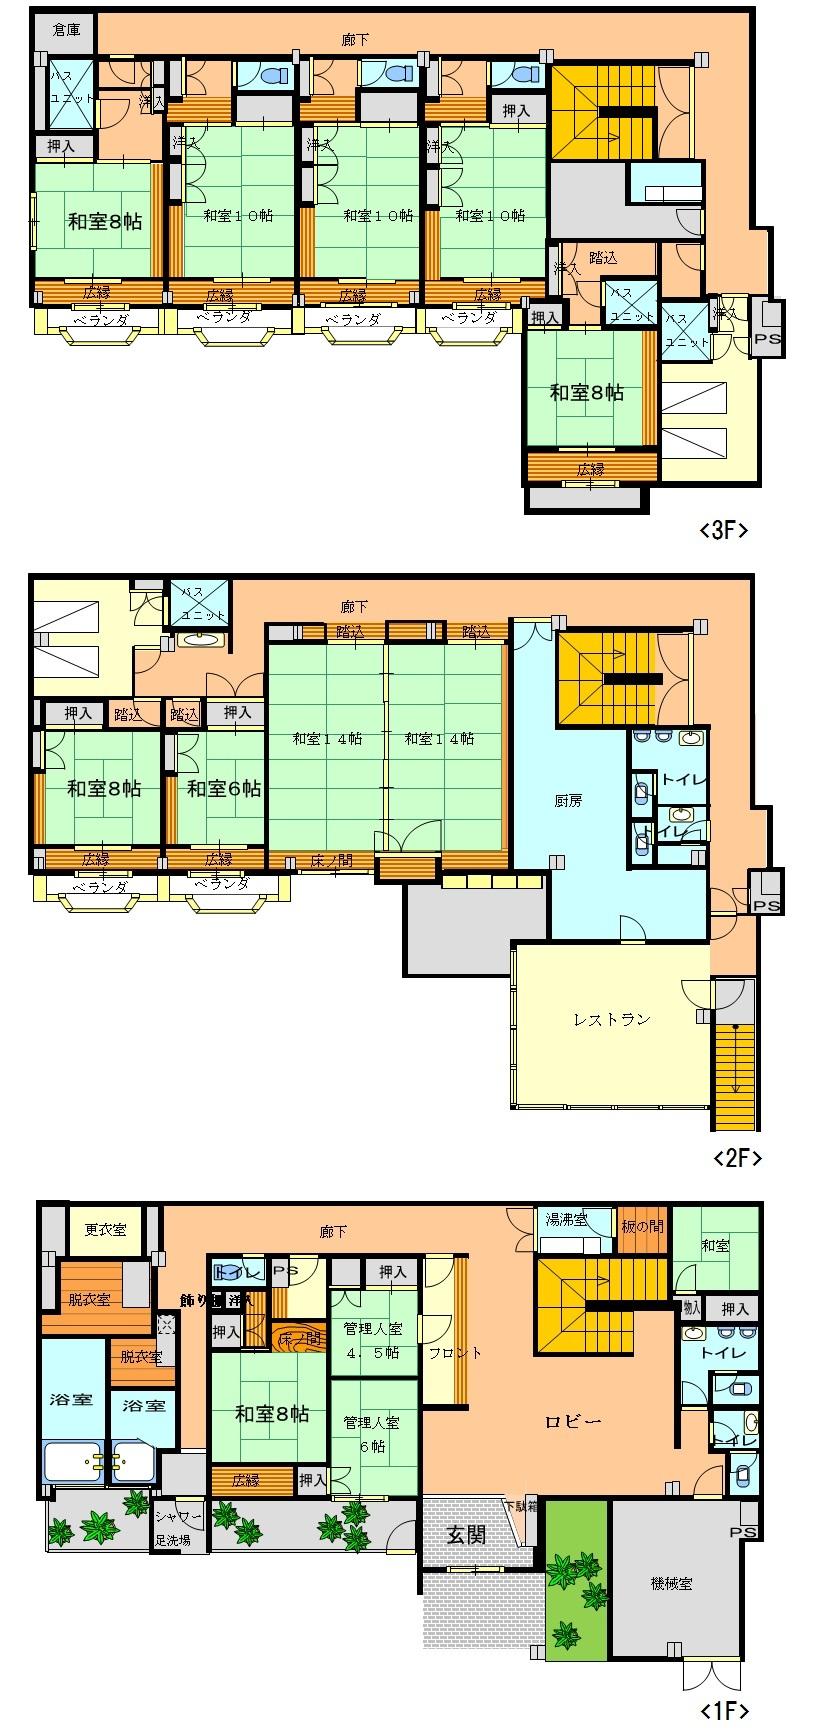 Floor plan. 35 million yen, 14LDK, Land area 560.11 sq m , Building area 761.14 sq m